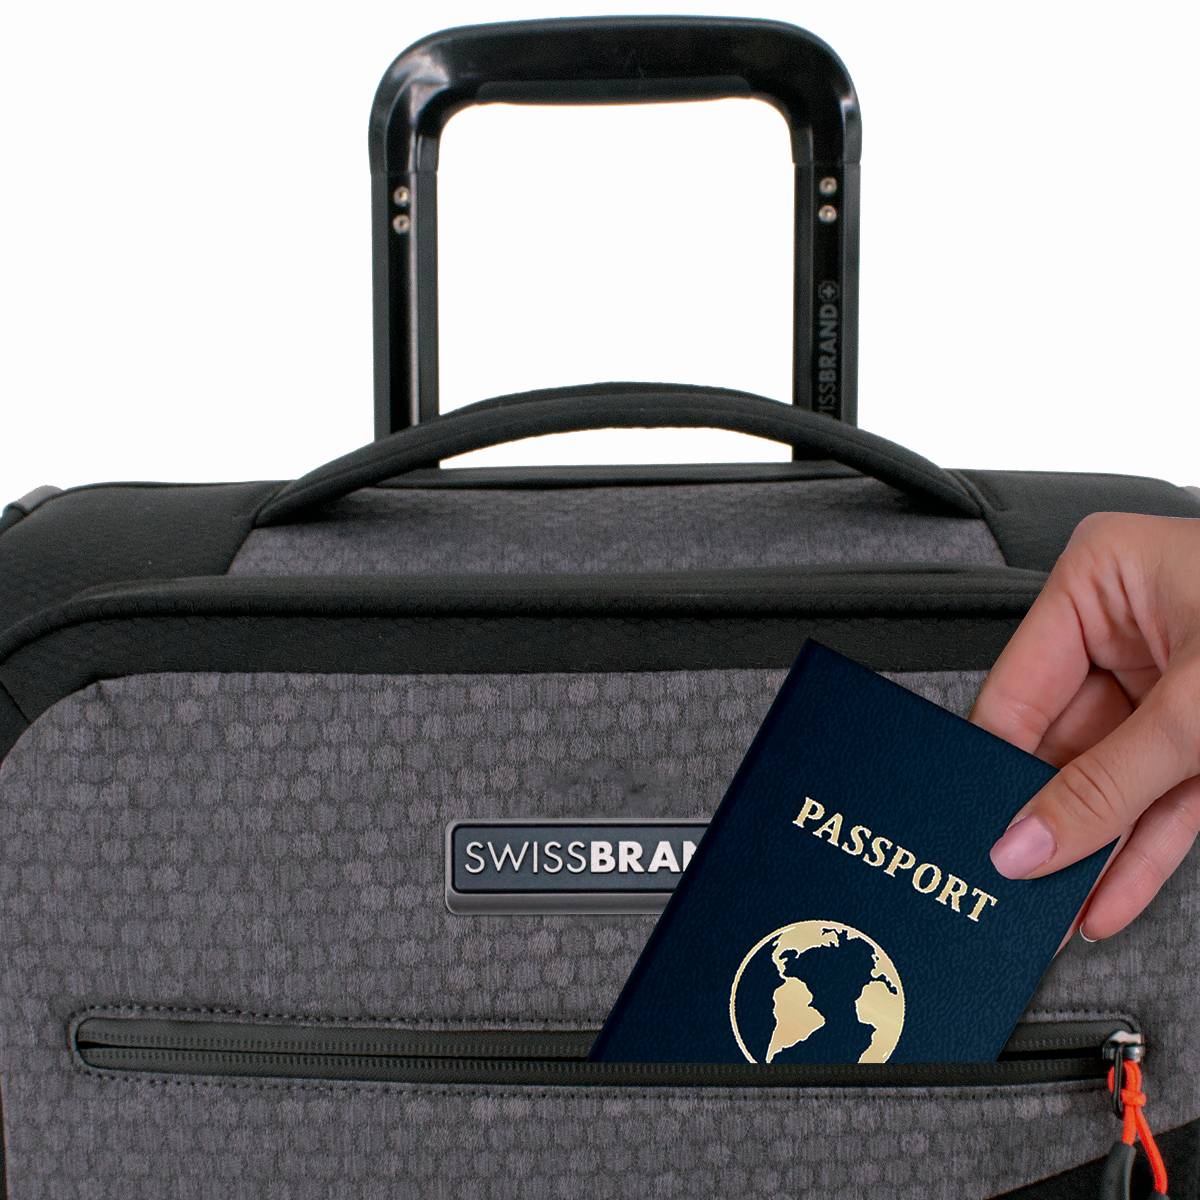 ✮מותג שוויצרי מקורי✮ מזוודה בינונית 24" בד סופר חזק ריפסטופ (בד מצנחים) קלה מבית המותג השוויצרי SwissBrand דגם HEXA